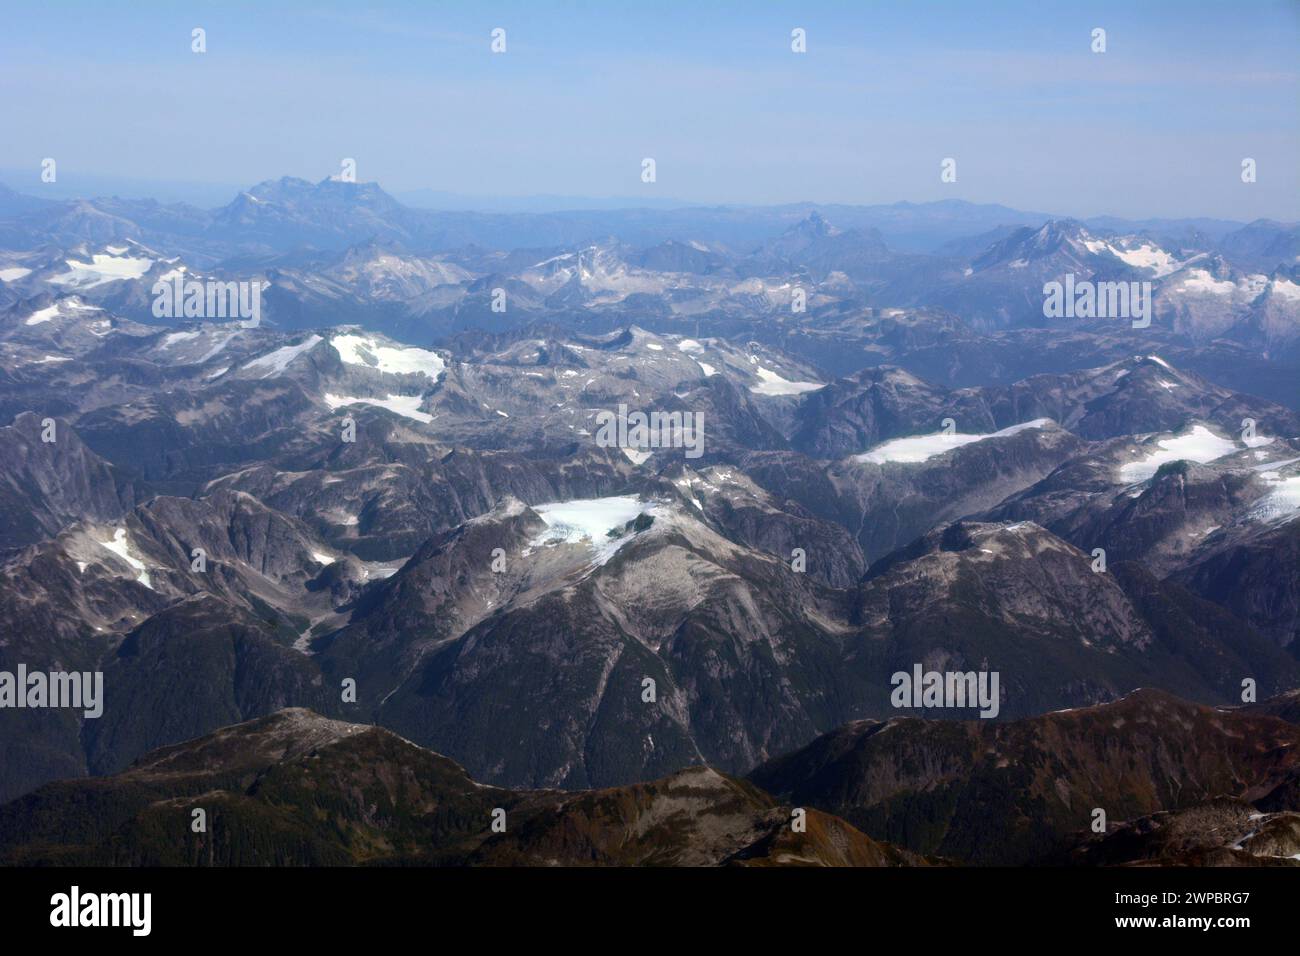 Vista aerea delle Montagne costiere della Columbia Britannica alla fine dell'estate che mostra la fusione e il ritiro glaciale, vicino a bella Coola, Columbia Britannica, Canada. Foto Stock